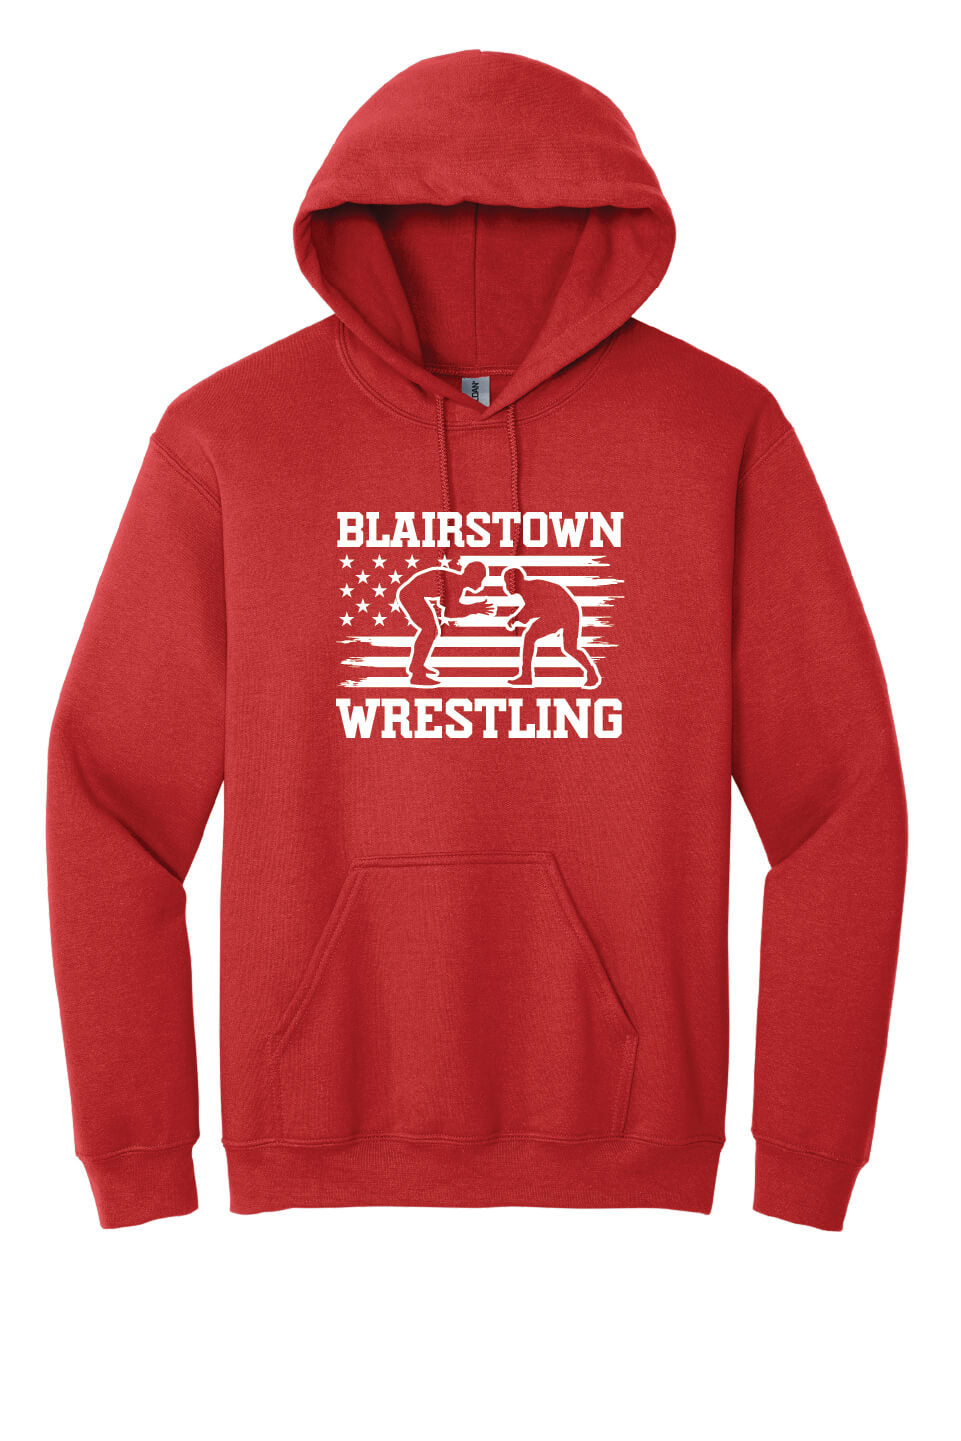 Blairstown Wrestling Flag Hoodie red